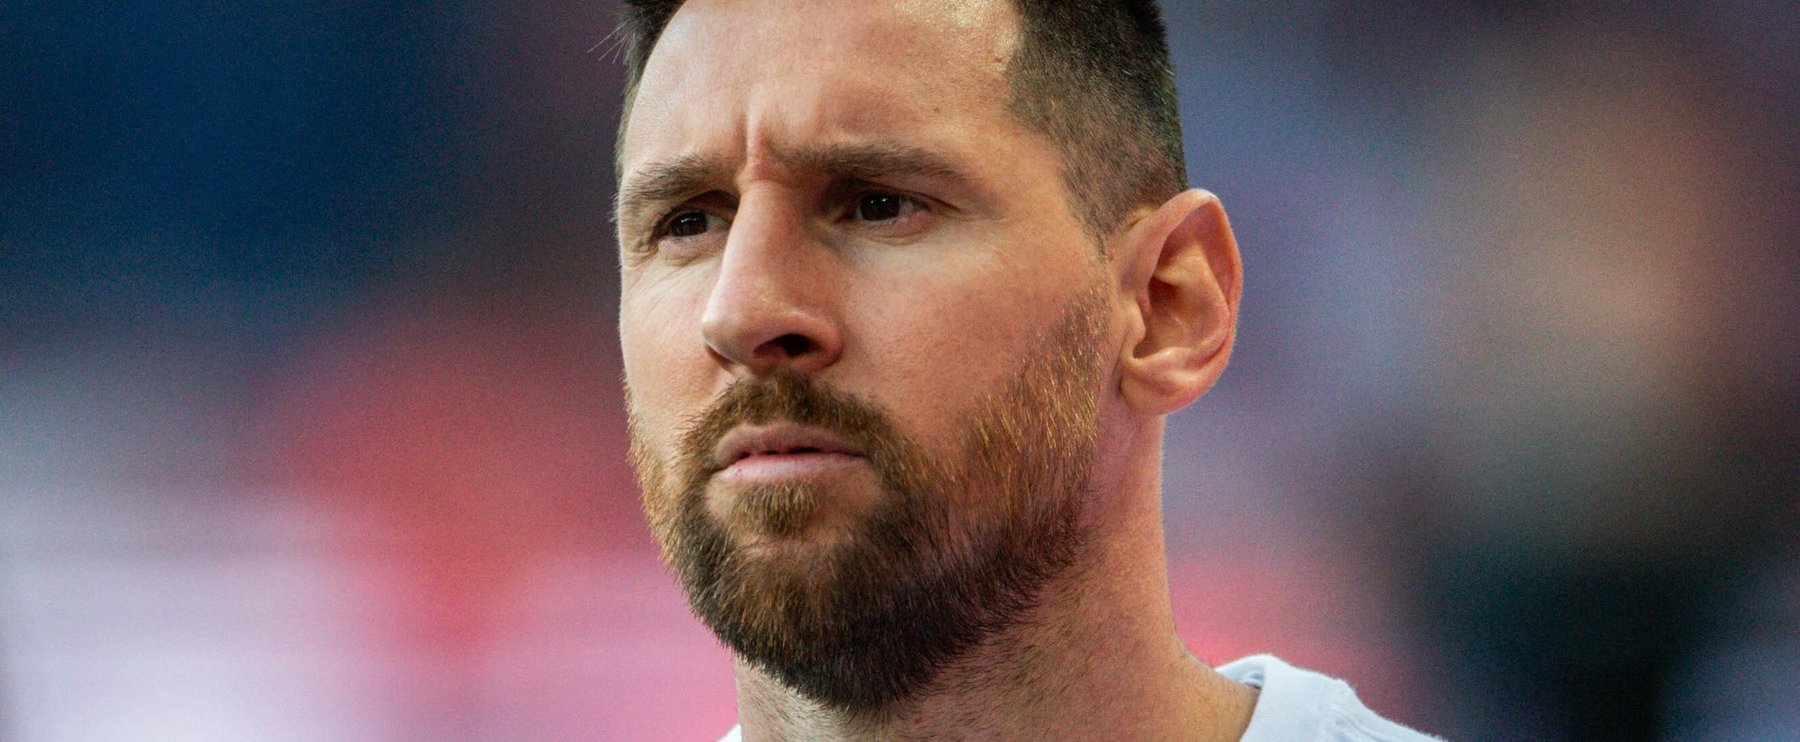 Nézd meg Lionel Messi 2,5 milliárdos luxuslakását, amit Miami-ban vett magának